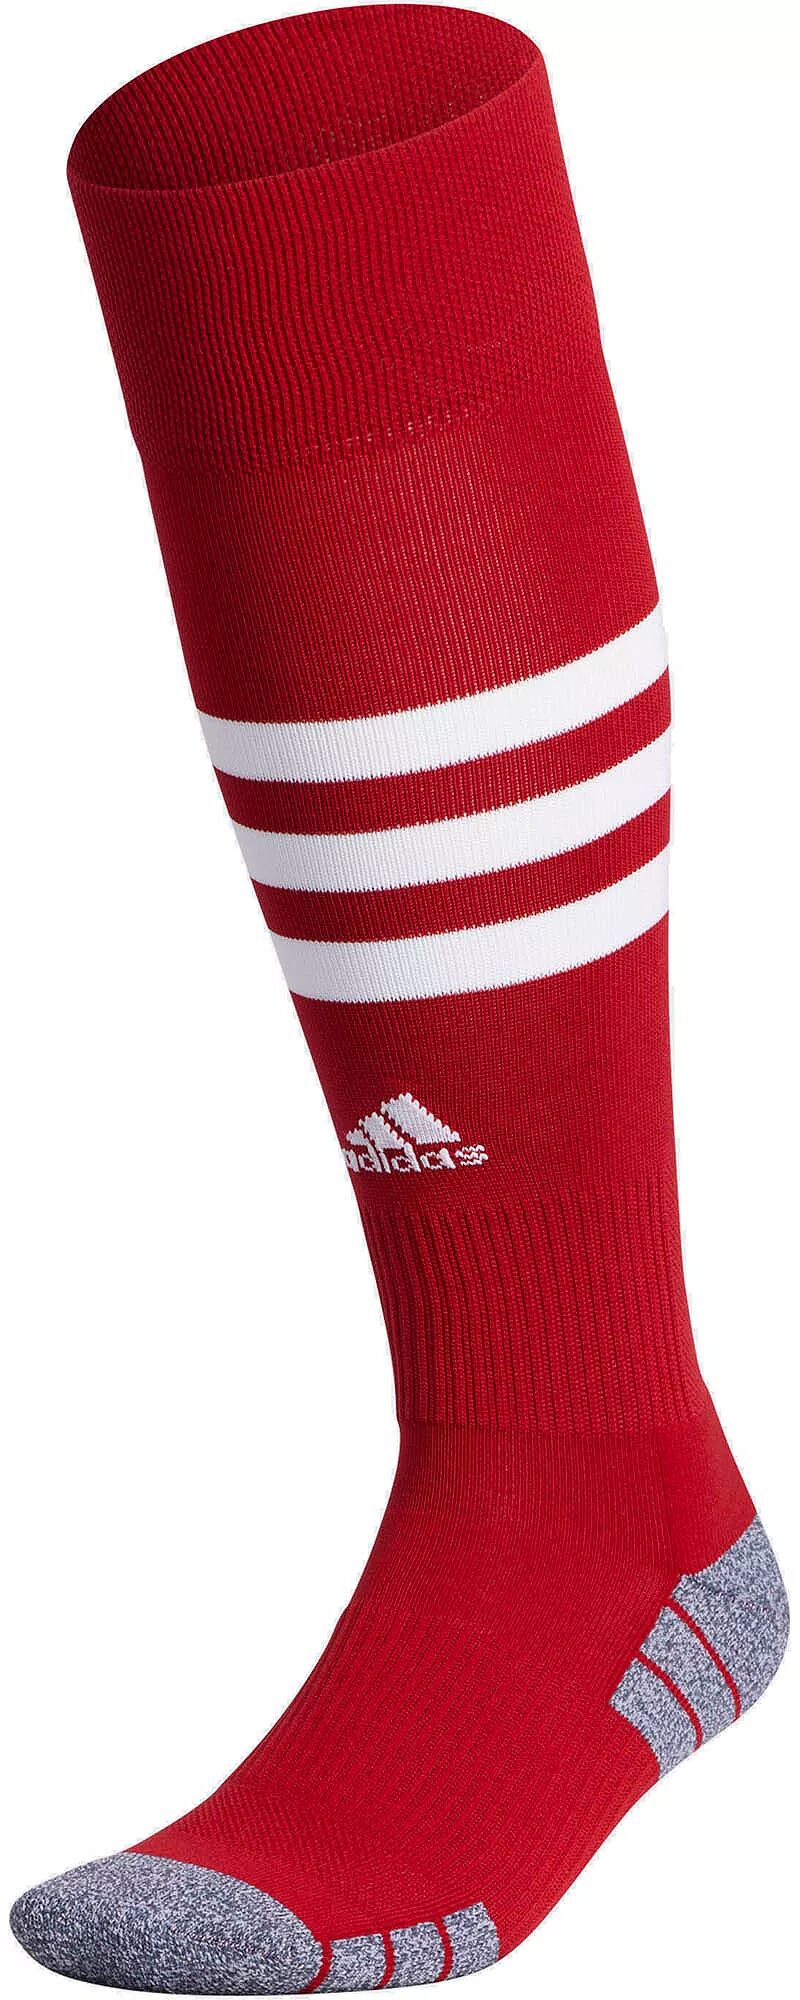 Футбольные носки Adidas с 3 полосками, красный